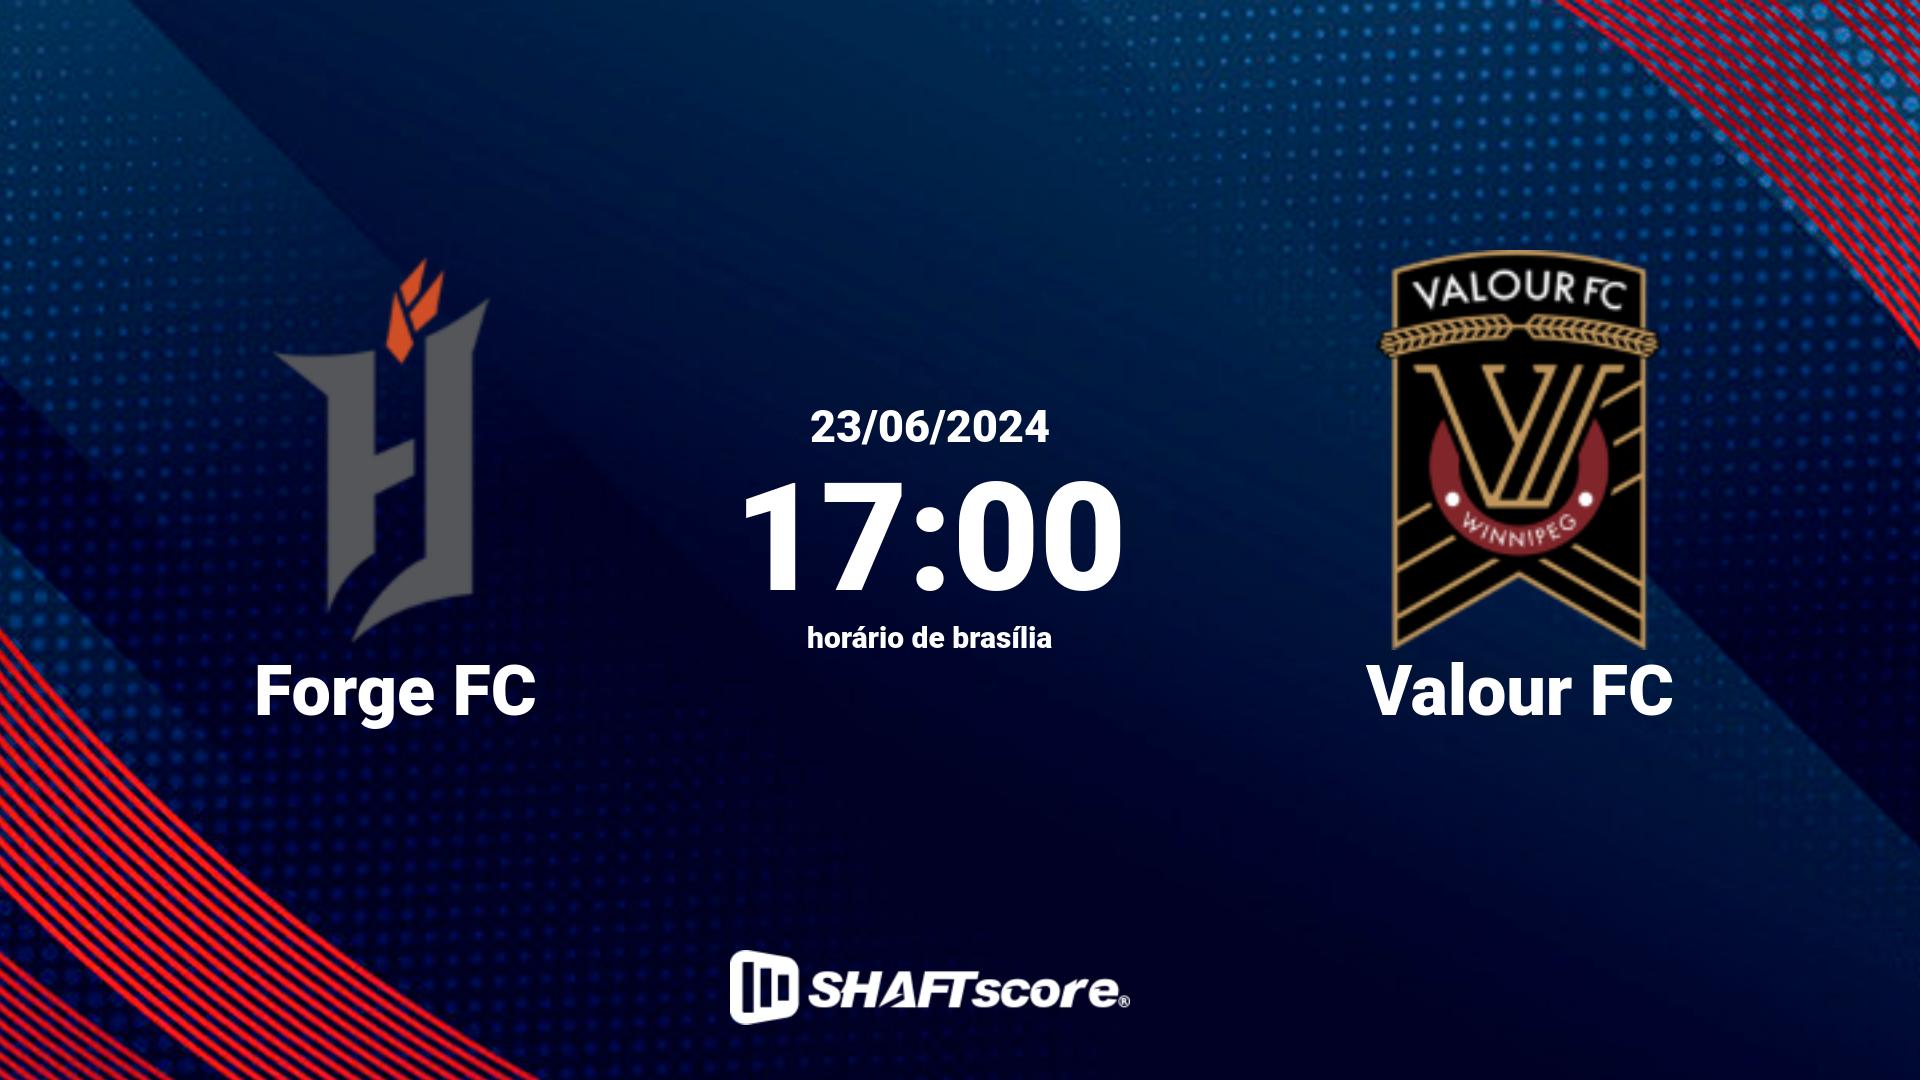 Estatísticas do jogo Forge FC vs Valour FC 23.06 17:00